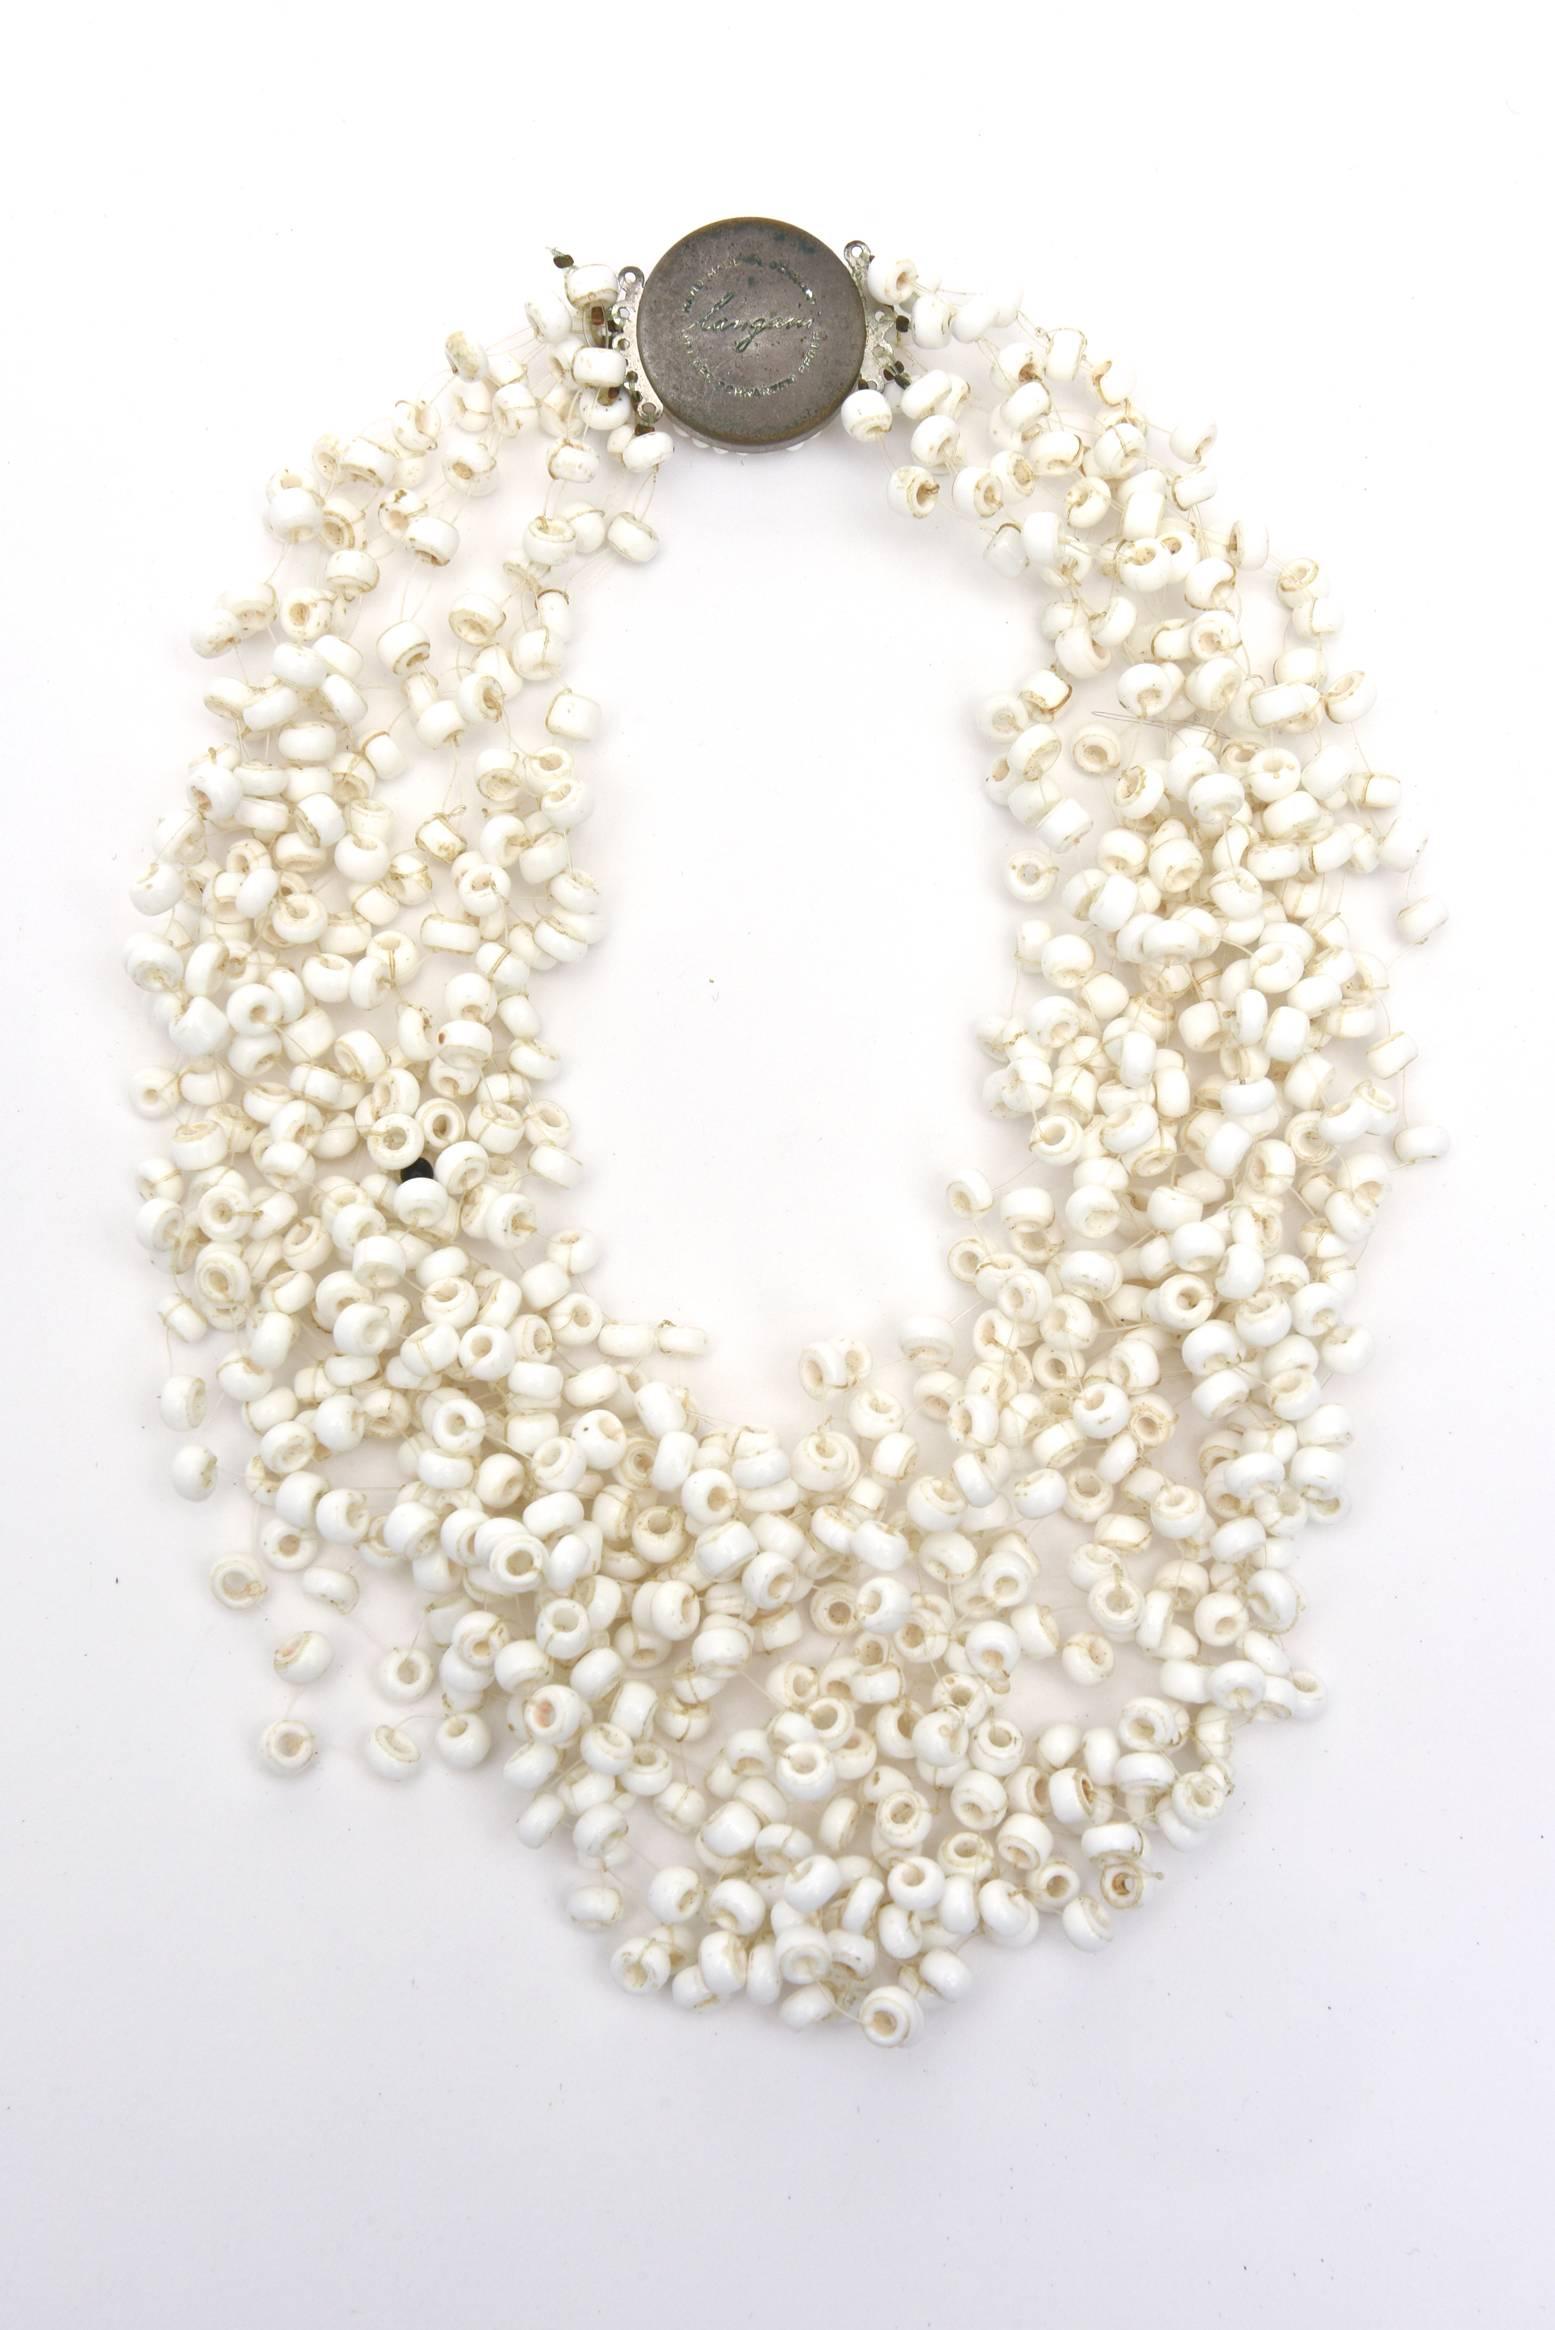 Ce magnifique collier vintage blanc à plusieurs brins signé Langani et conçu par Anna Langani d'Allemagne a un aspect net, aéré et une grande présence sculpturale. On a presque l'impression qu'il flotte sur le cou. Il est désormais parfait pour